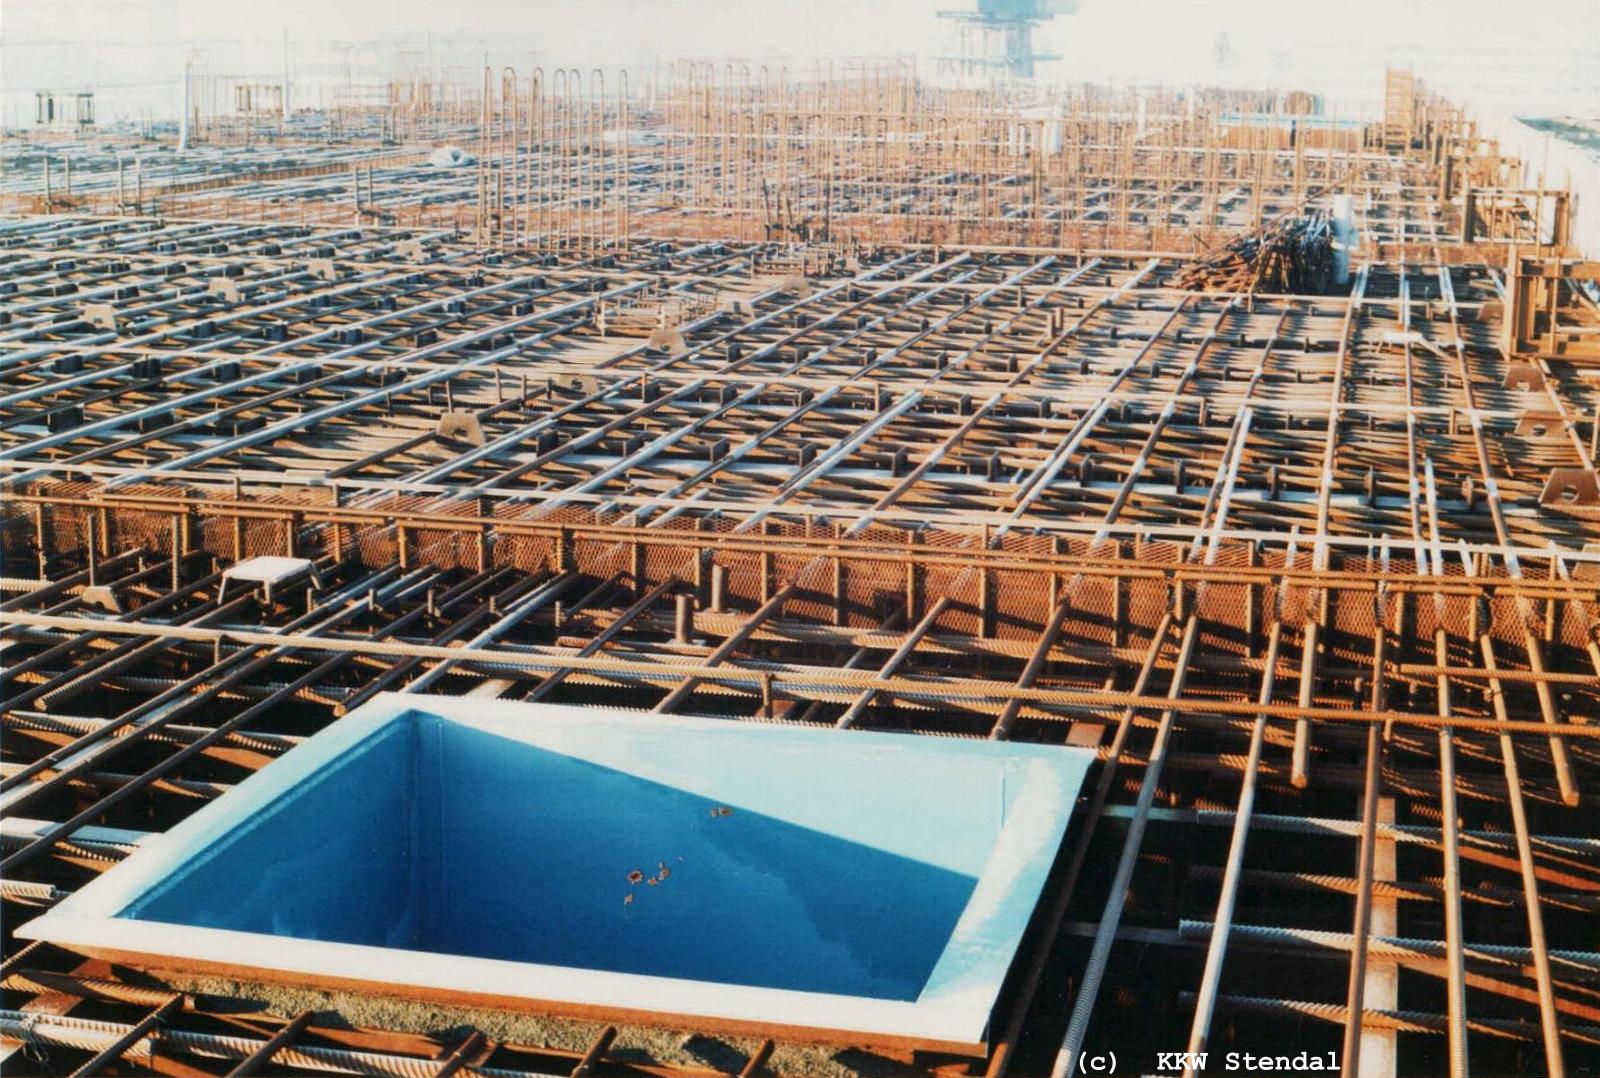  KKW Stendal, Baustelle 1990,
  SWA Spezielle Wasseraufbereitung, Deckenabschnitt Kote +13.20 / +14.10 m 